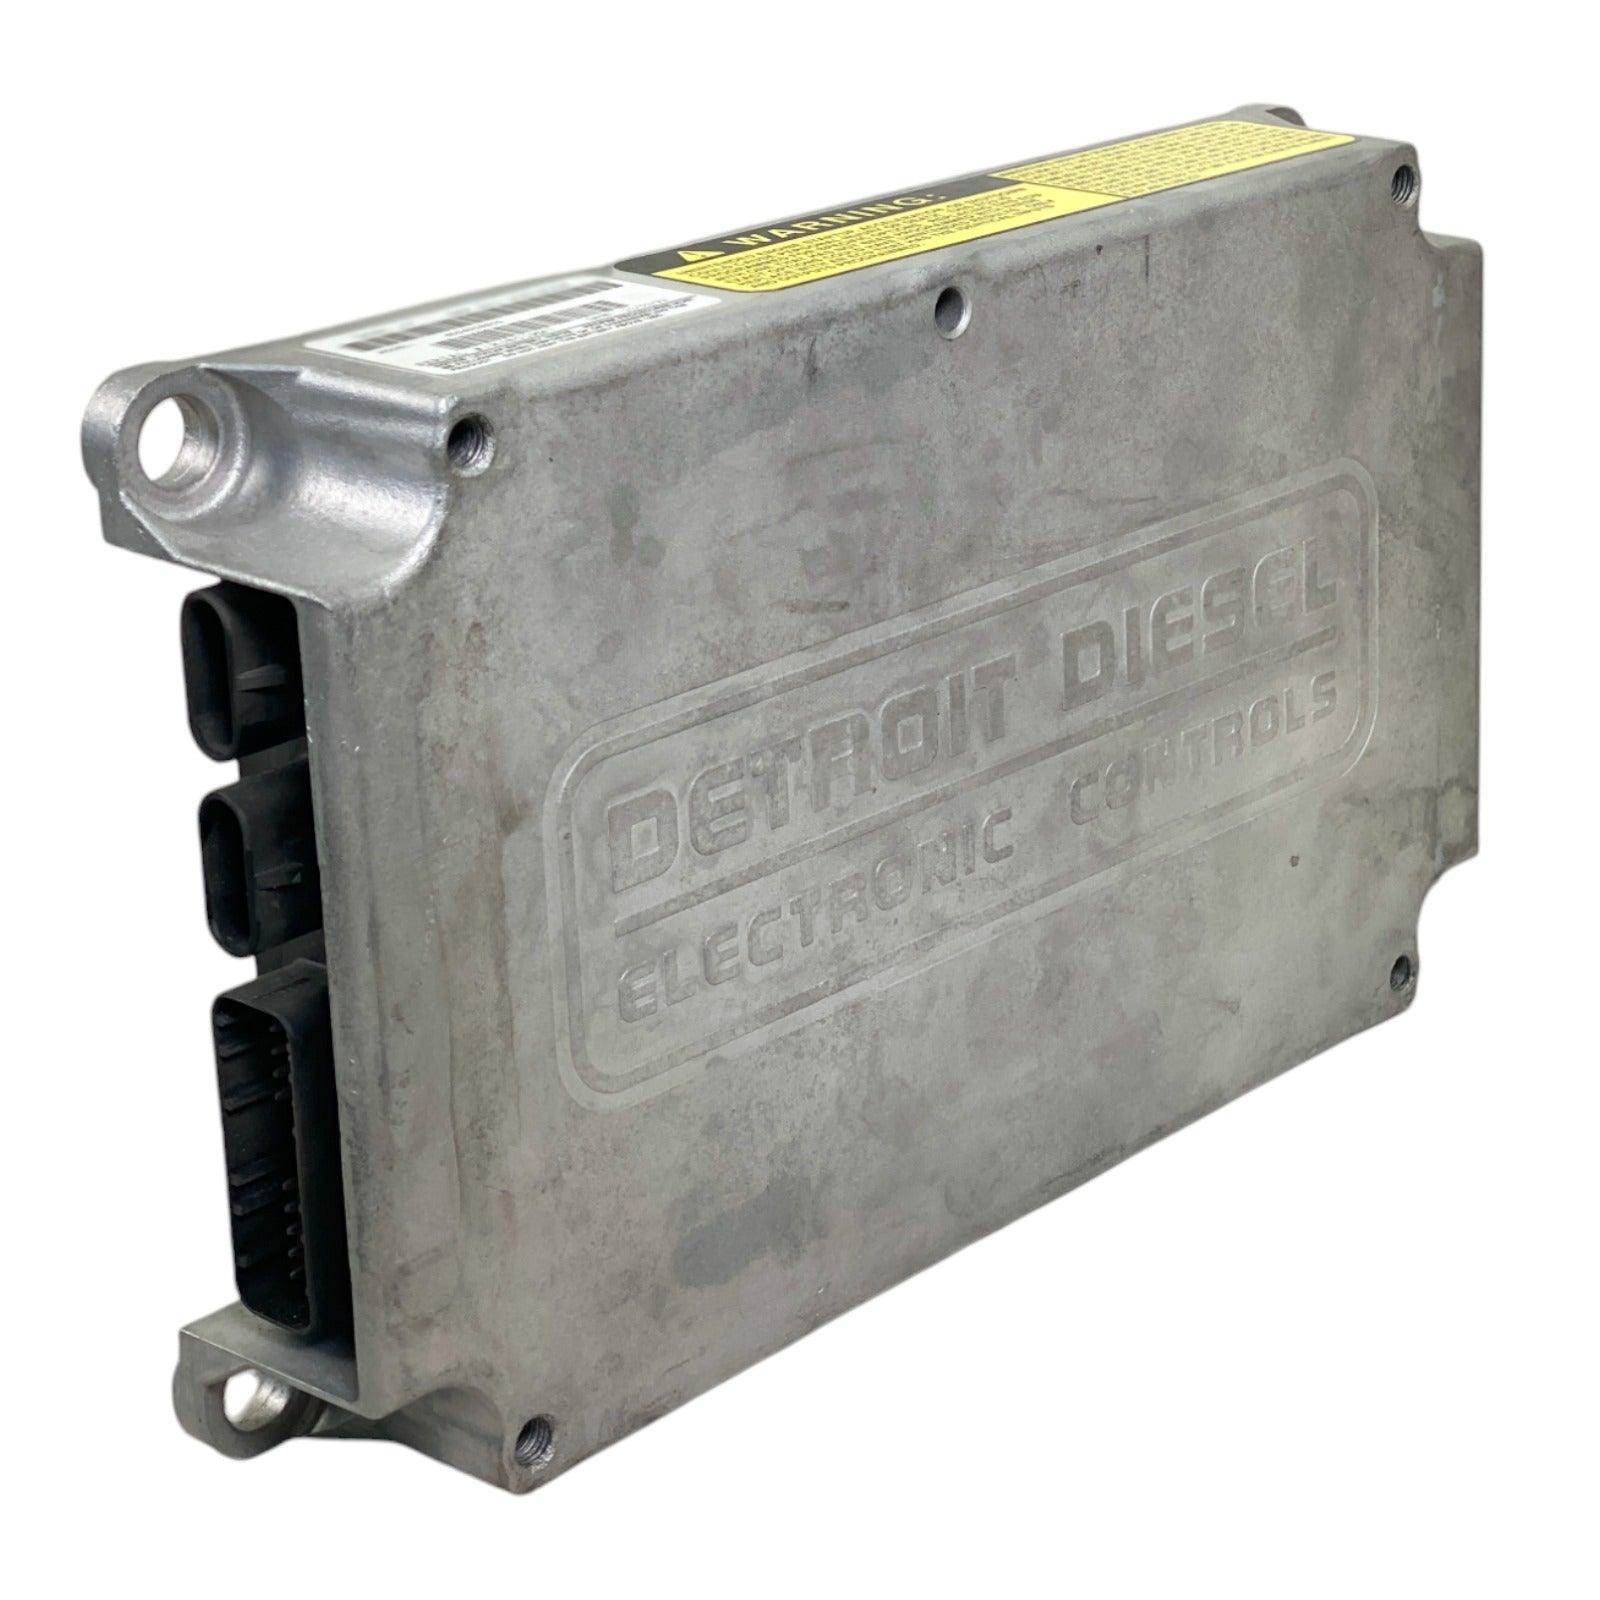 R23519308 Genuine Detroit Diesel® Ecm Engine Control Module For 50/60 - ADVANCED TRUCK PARTS